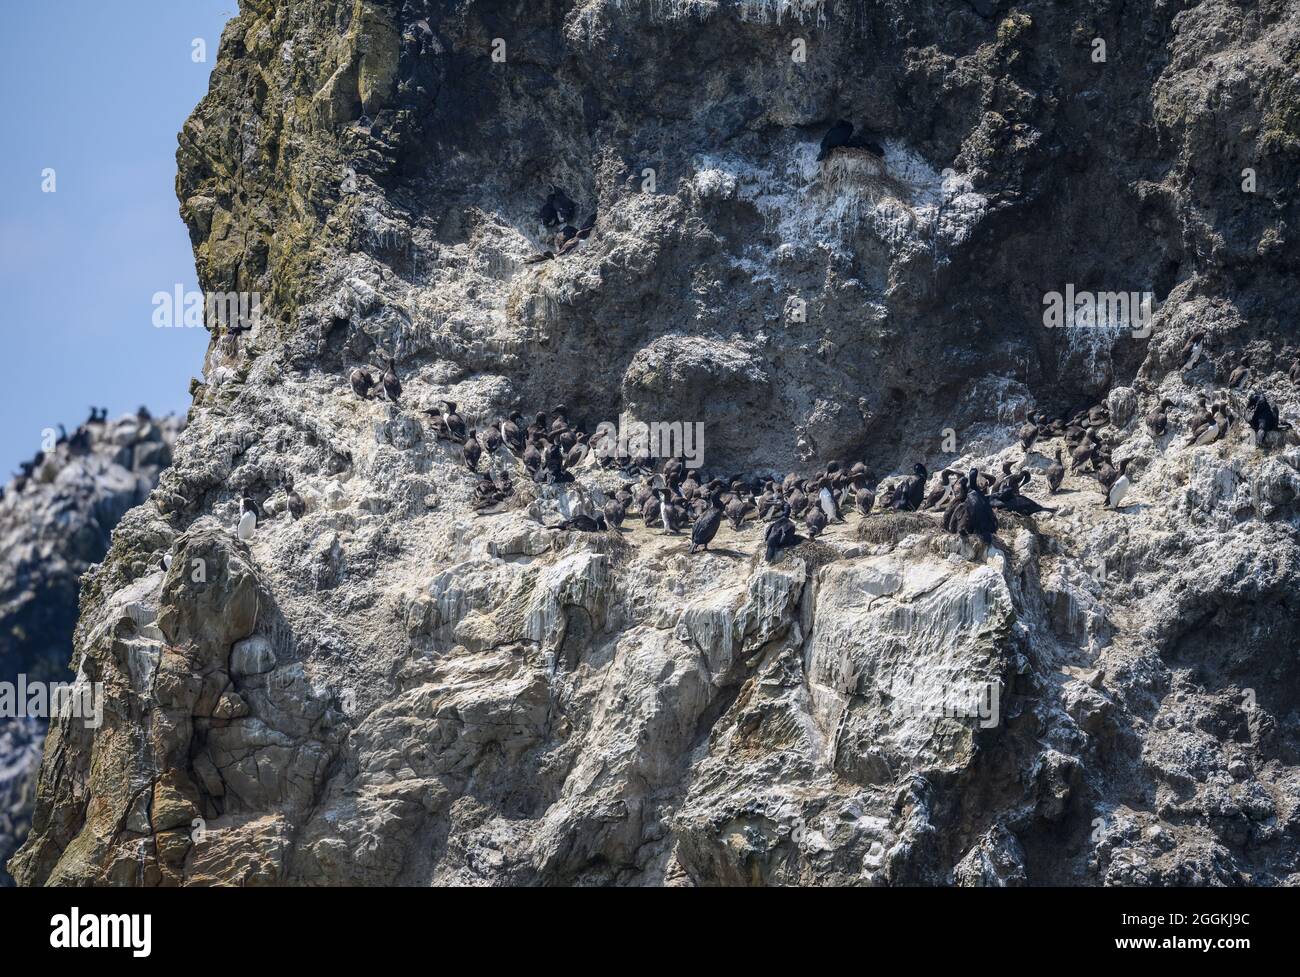 Les oiseaux de mer colonisent les rochers au large de la côte de l'Oregon, aux États-Unis. Banque D'Images